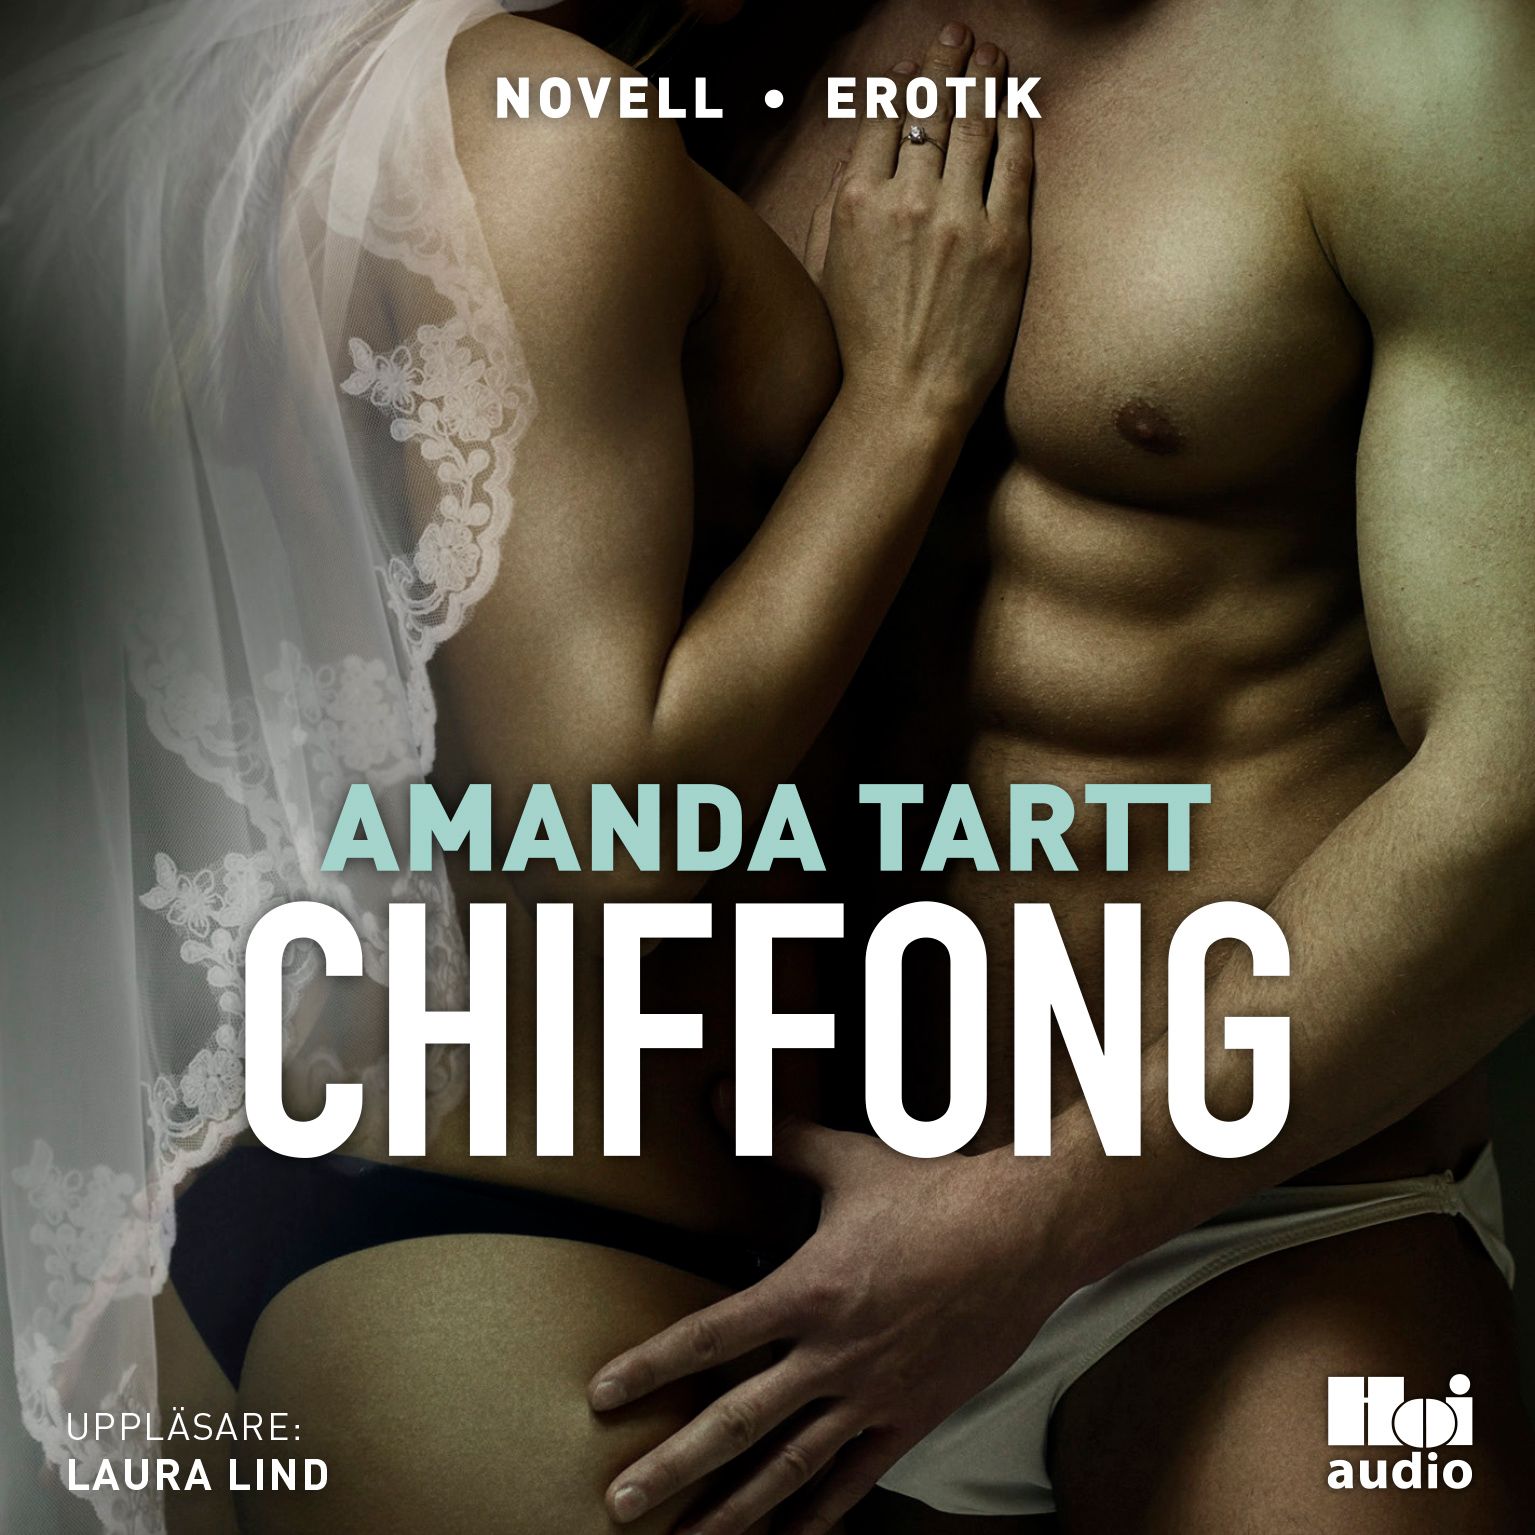 Chiffong, lydbog af Amanda Tartt